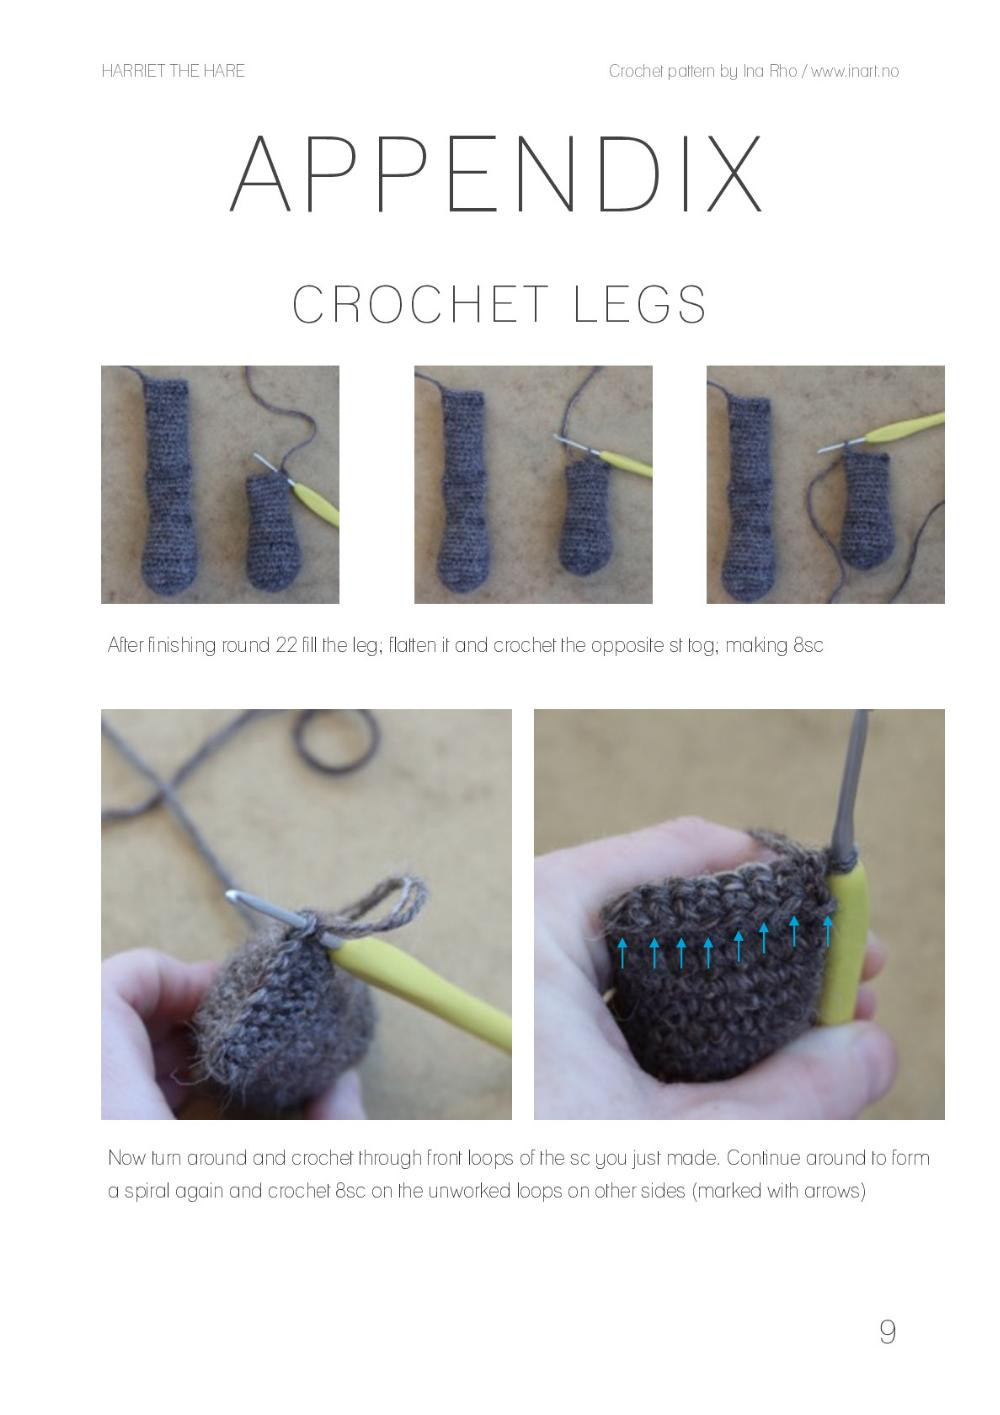 HARRIET THE HARE Crochet pattern